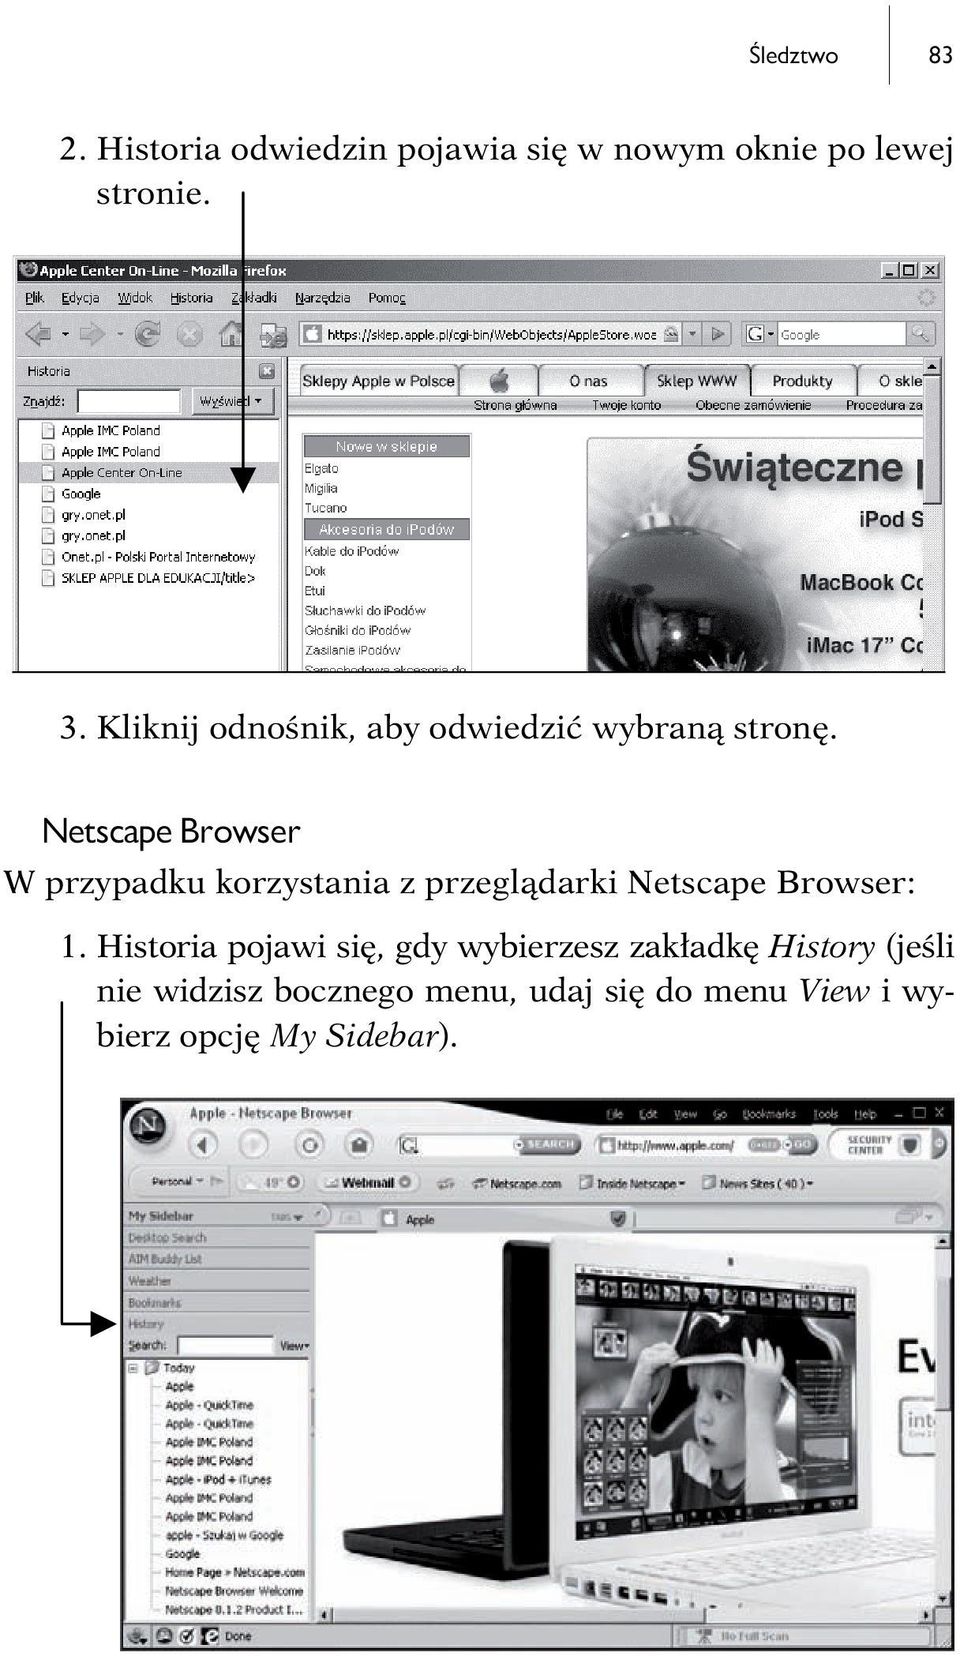 Netscape Browser W przypadku korzystania z przeglądarki Netscape Browser: 1.